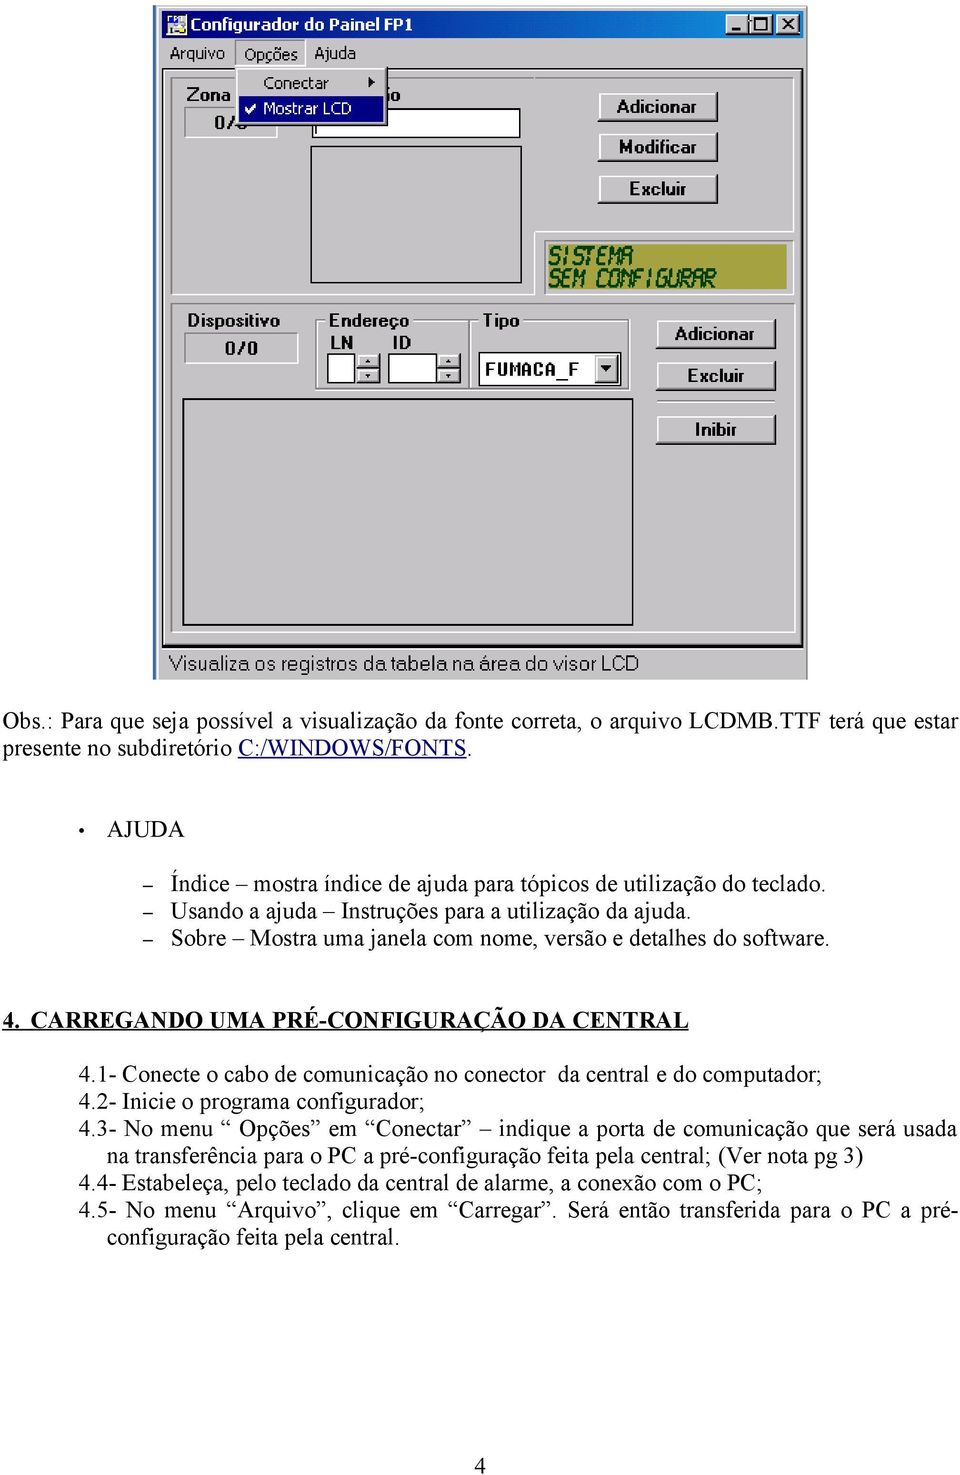 CARREGANDO UMA PRÉ-CONFIGURAÇÃO DA CENTRAL 4.1- Conecte o cabo de comunicação no conector da central e do computador; 4.2- Inicie o programa configurador; 4.